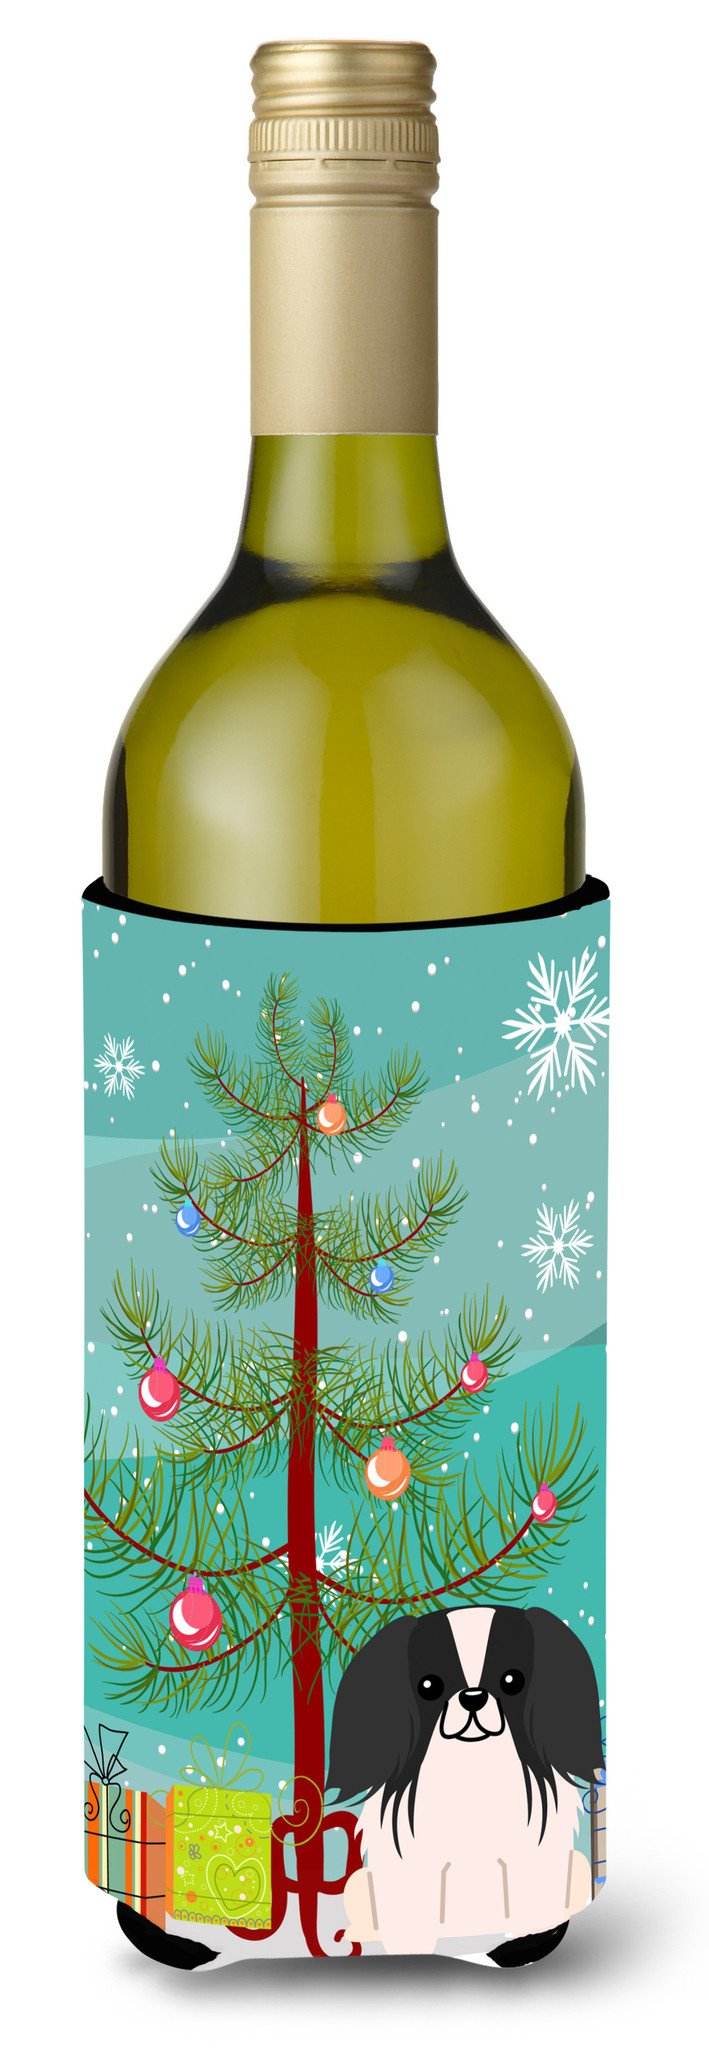 Merry Christmas Tree Pekingnese Black White Wine Bottle Beverge Insulator Hugger BB4230LITERK by Caroline's Treasures